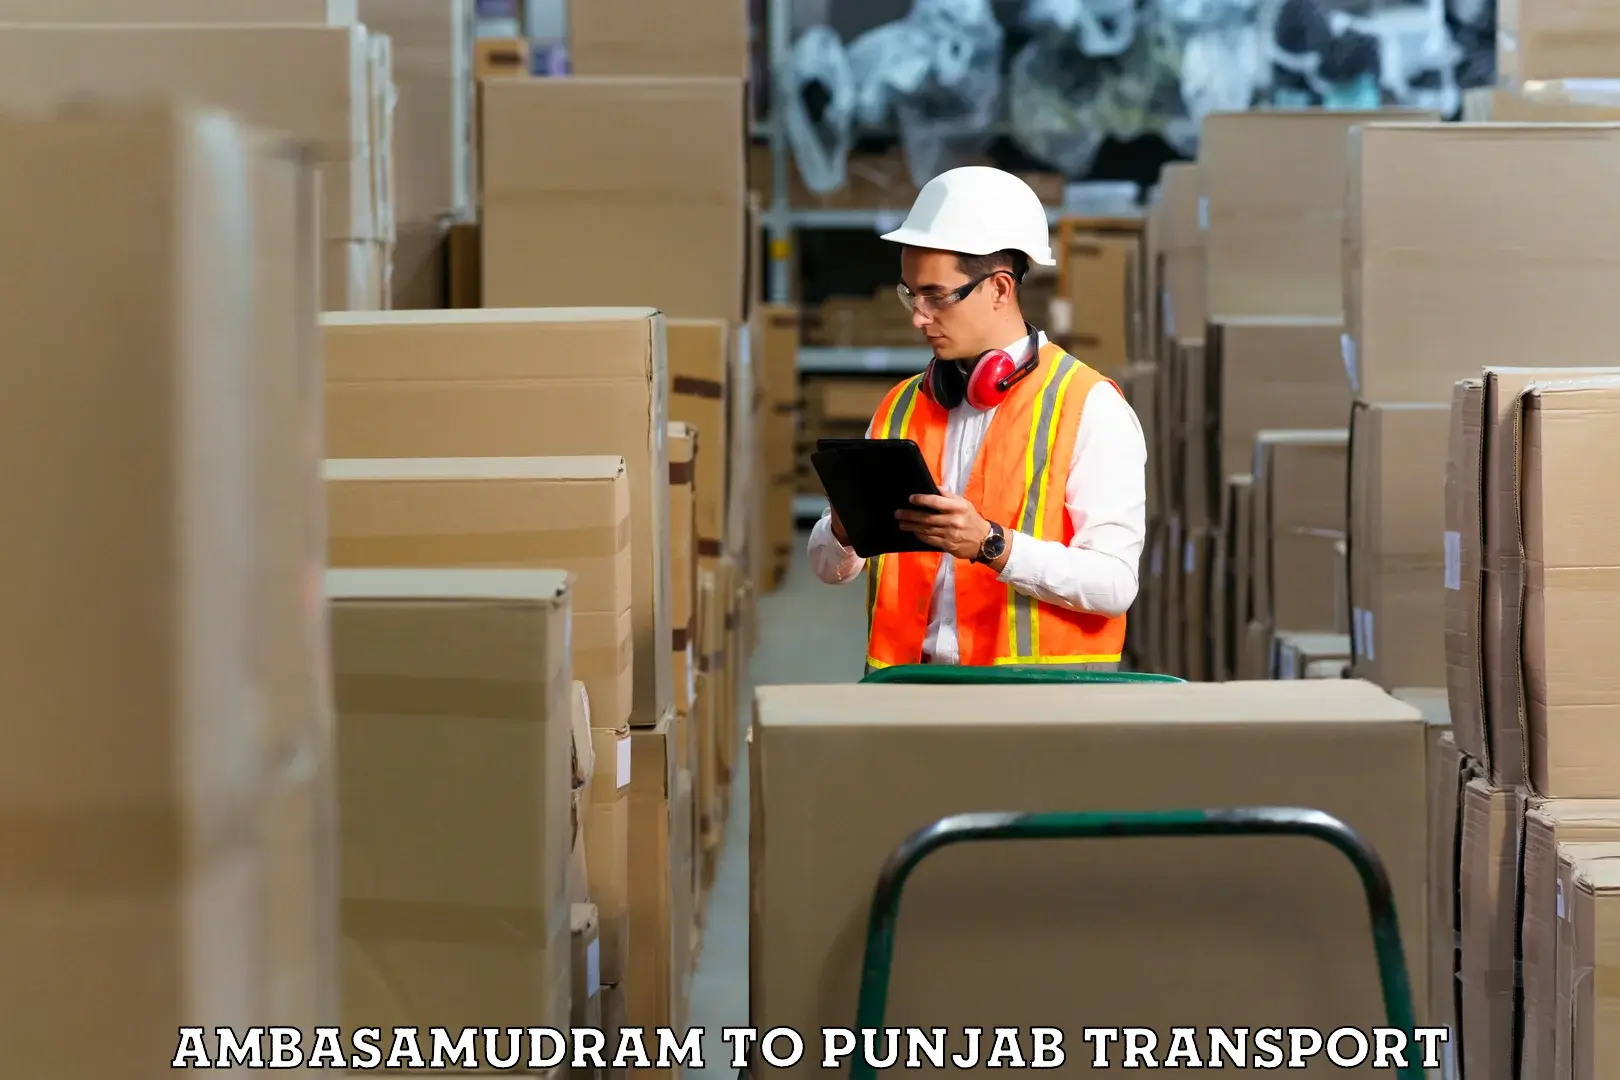 Transportation services Ambasamudram to Punjab